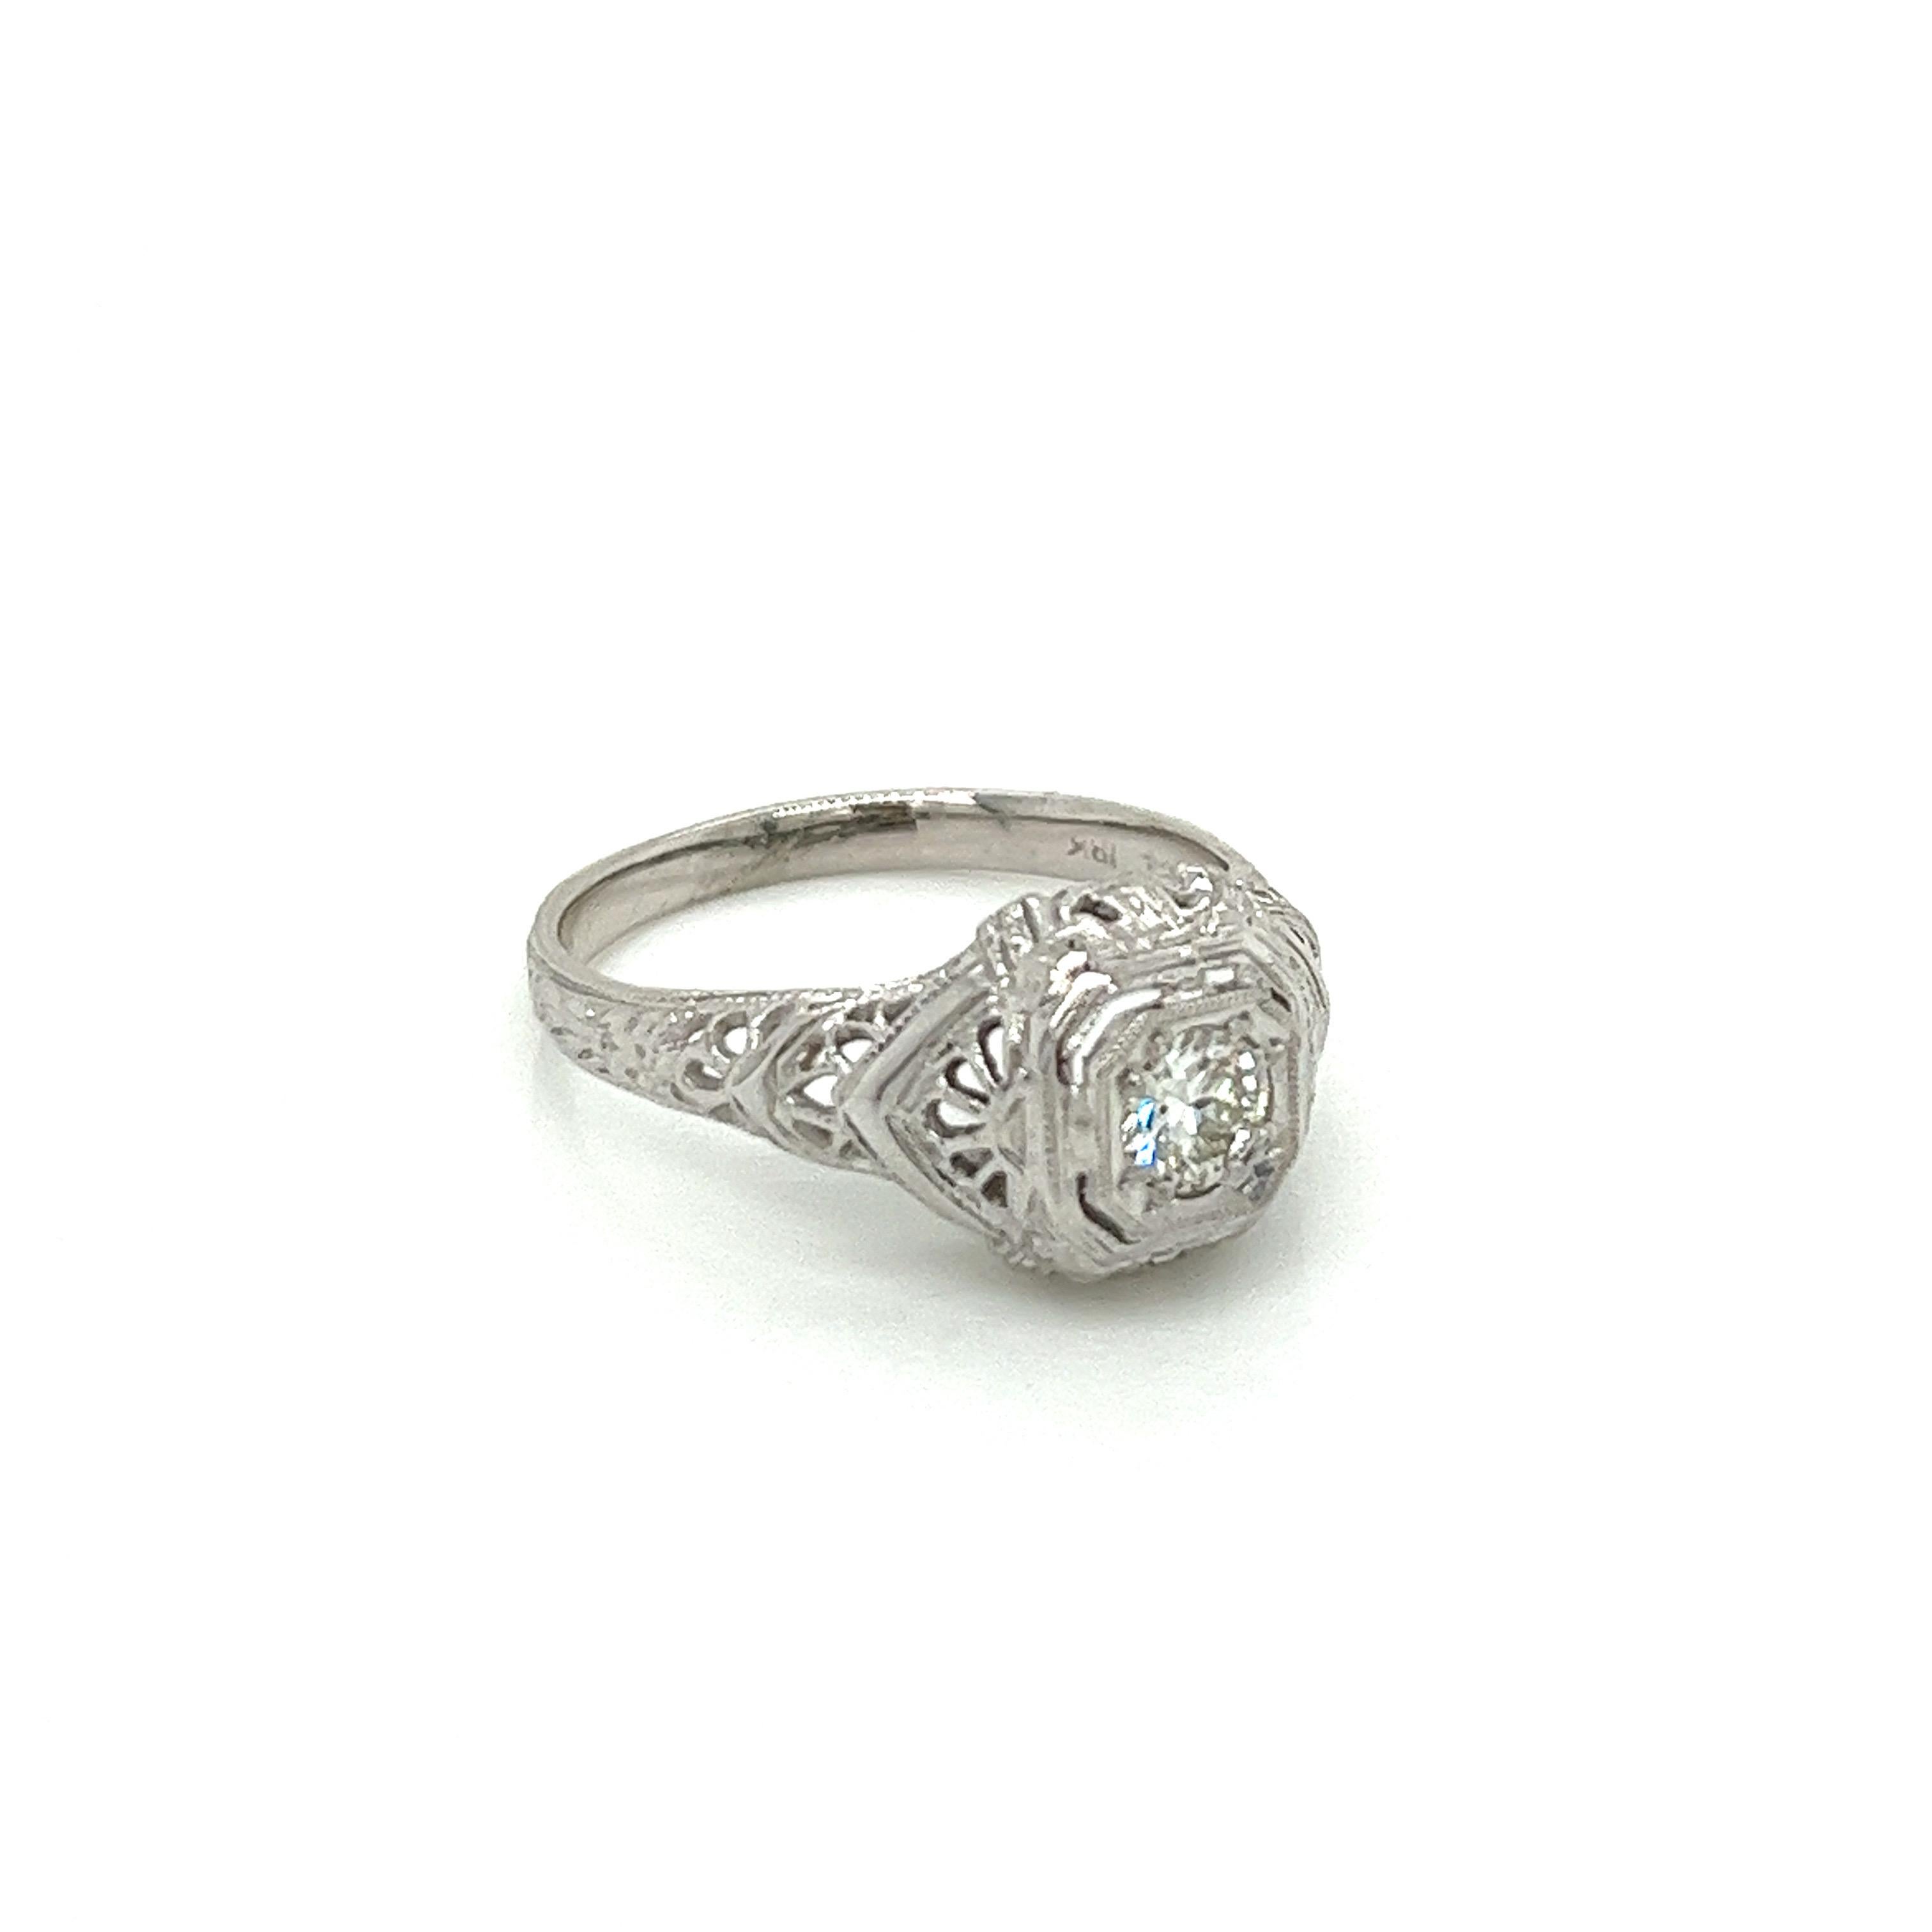 Vintage 1920's 18K White Gold Engagement Ring .22ct. Le diamant central de taille eurpéenne a une couleur H et une pureté VS1. La monture est filigranée et des fleurs d'oranger sont gravées sur l'anneau. L'anneau mesure 9,5 mm de large au centre et